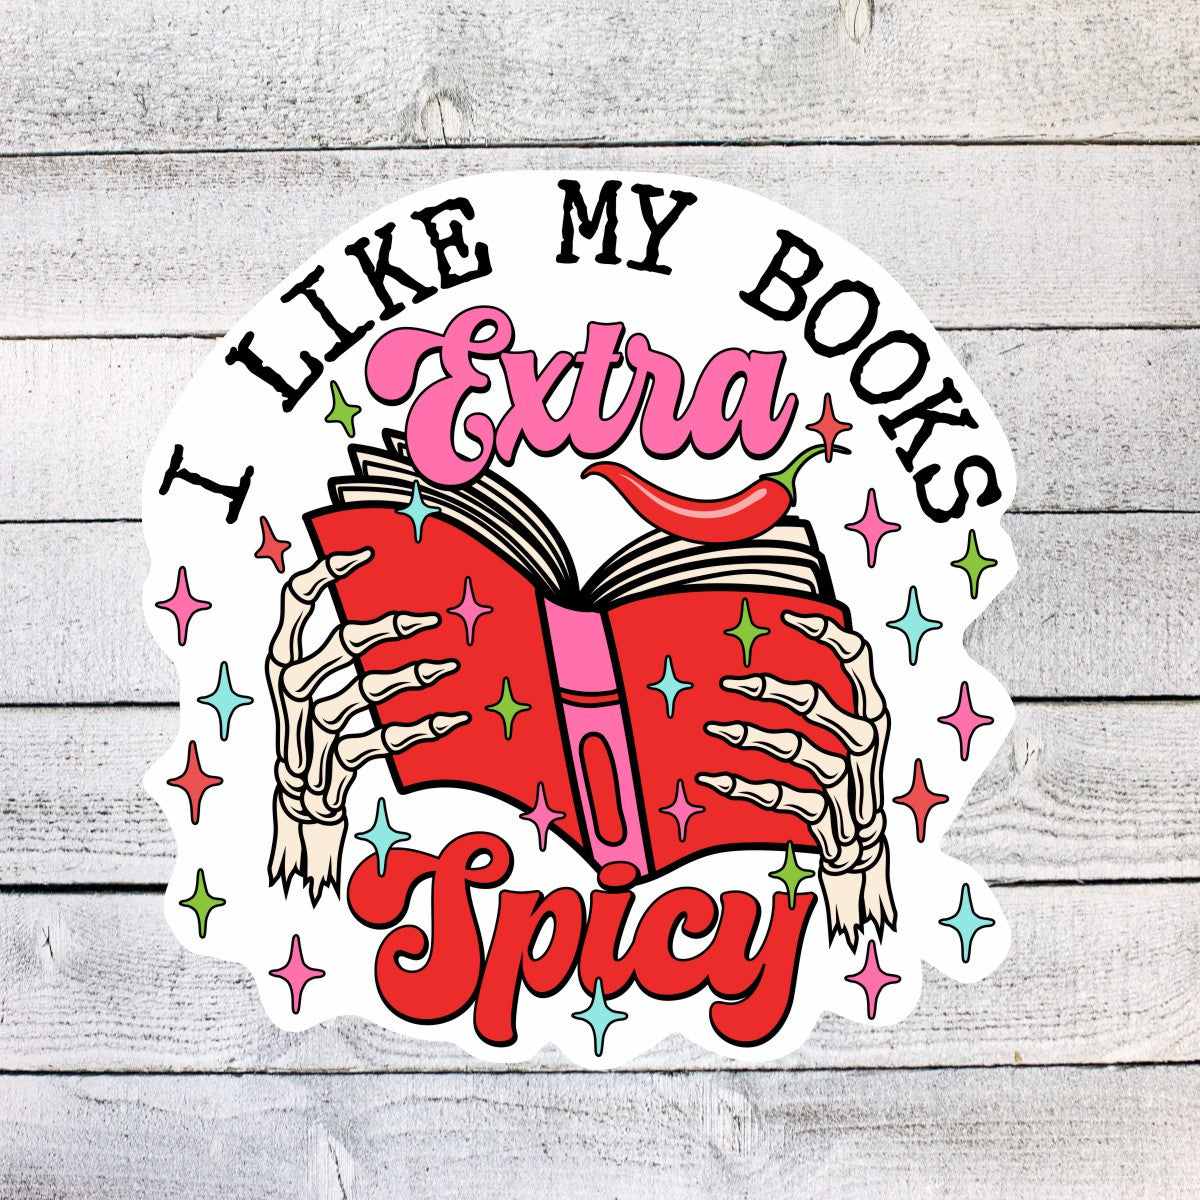 I Like my Books Extra Spicy Books Sticker